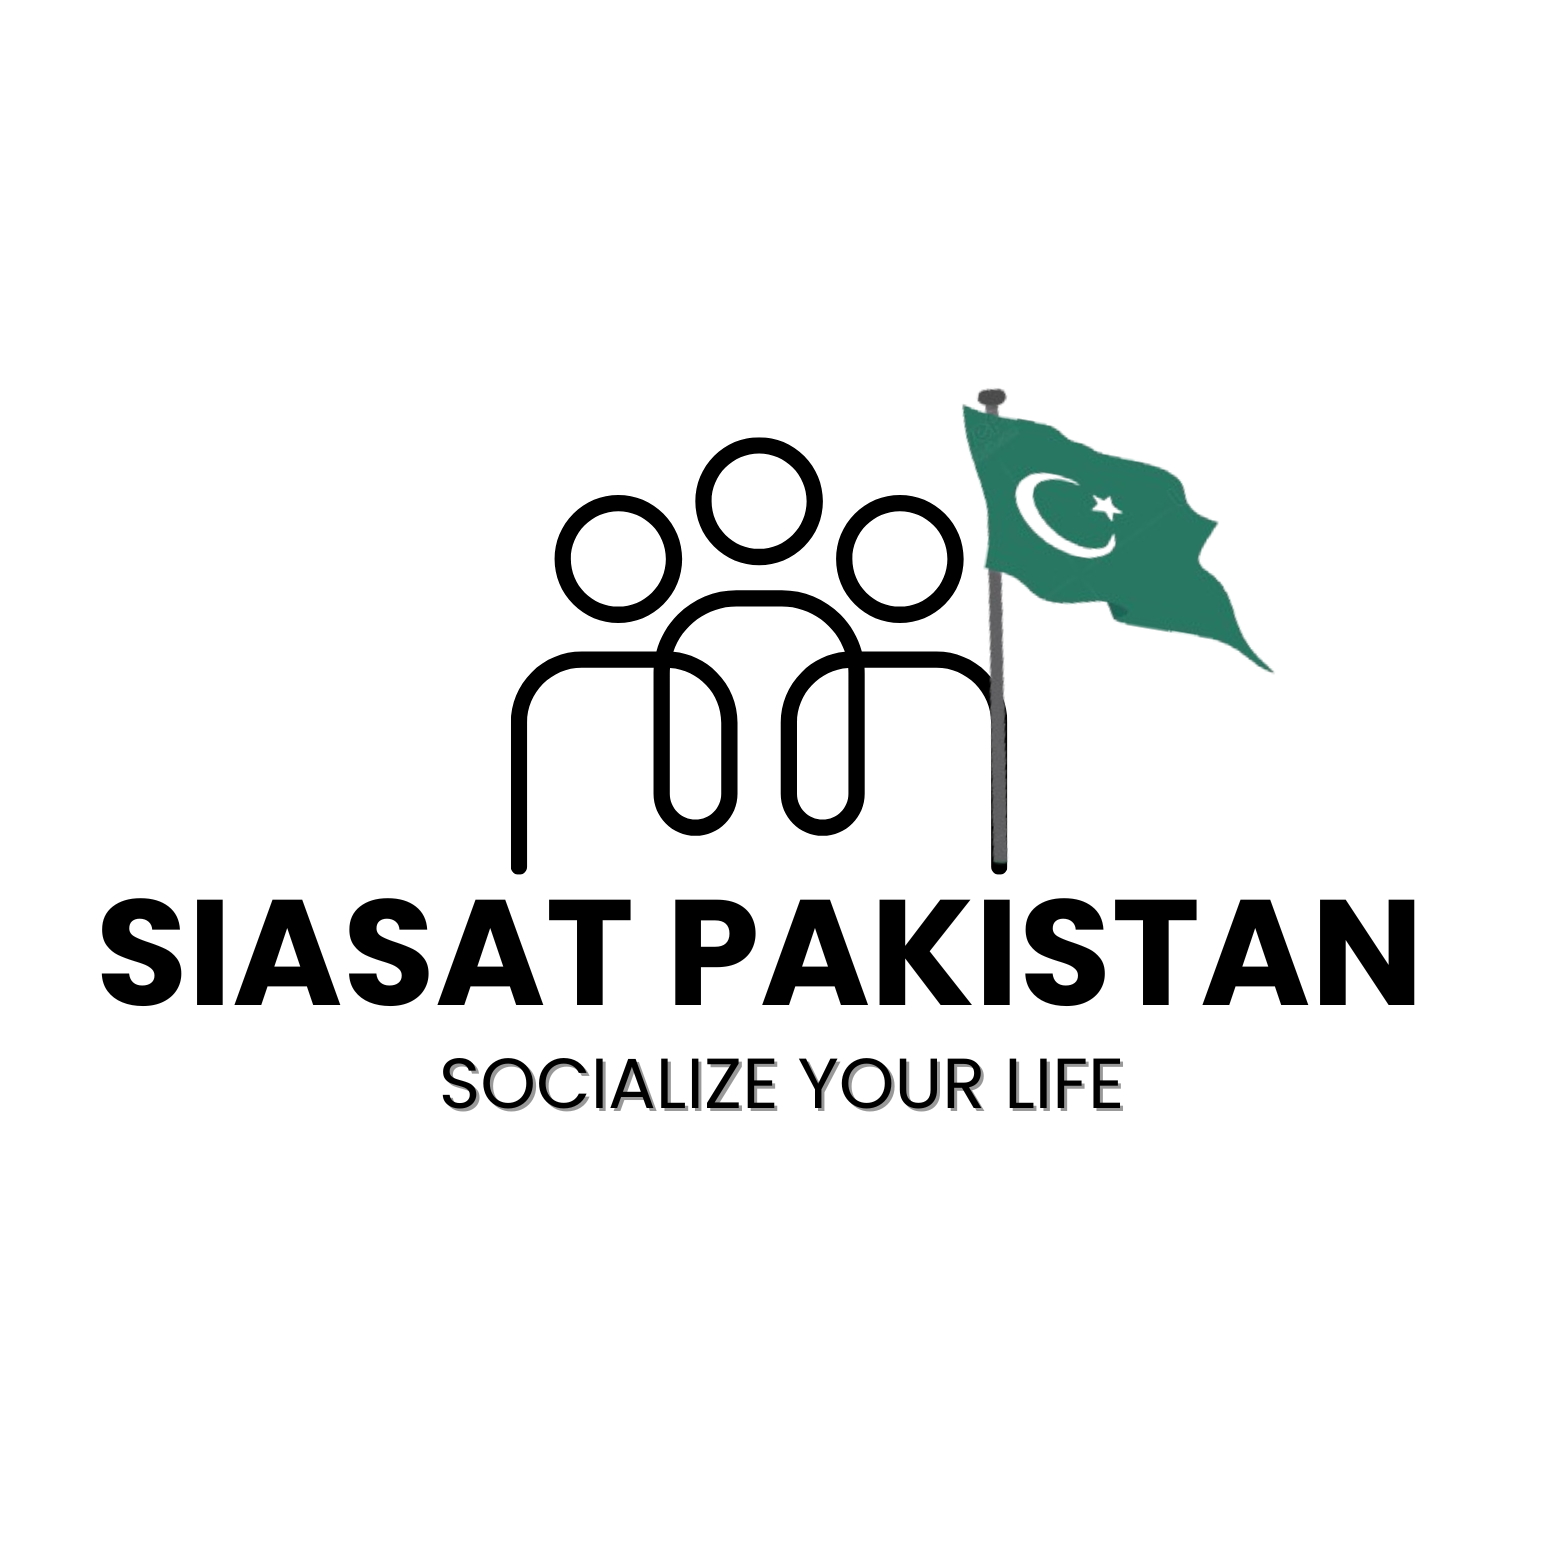 Siasat Pakistan